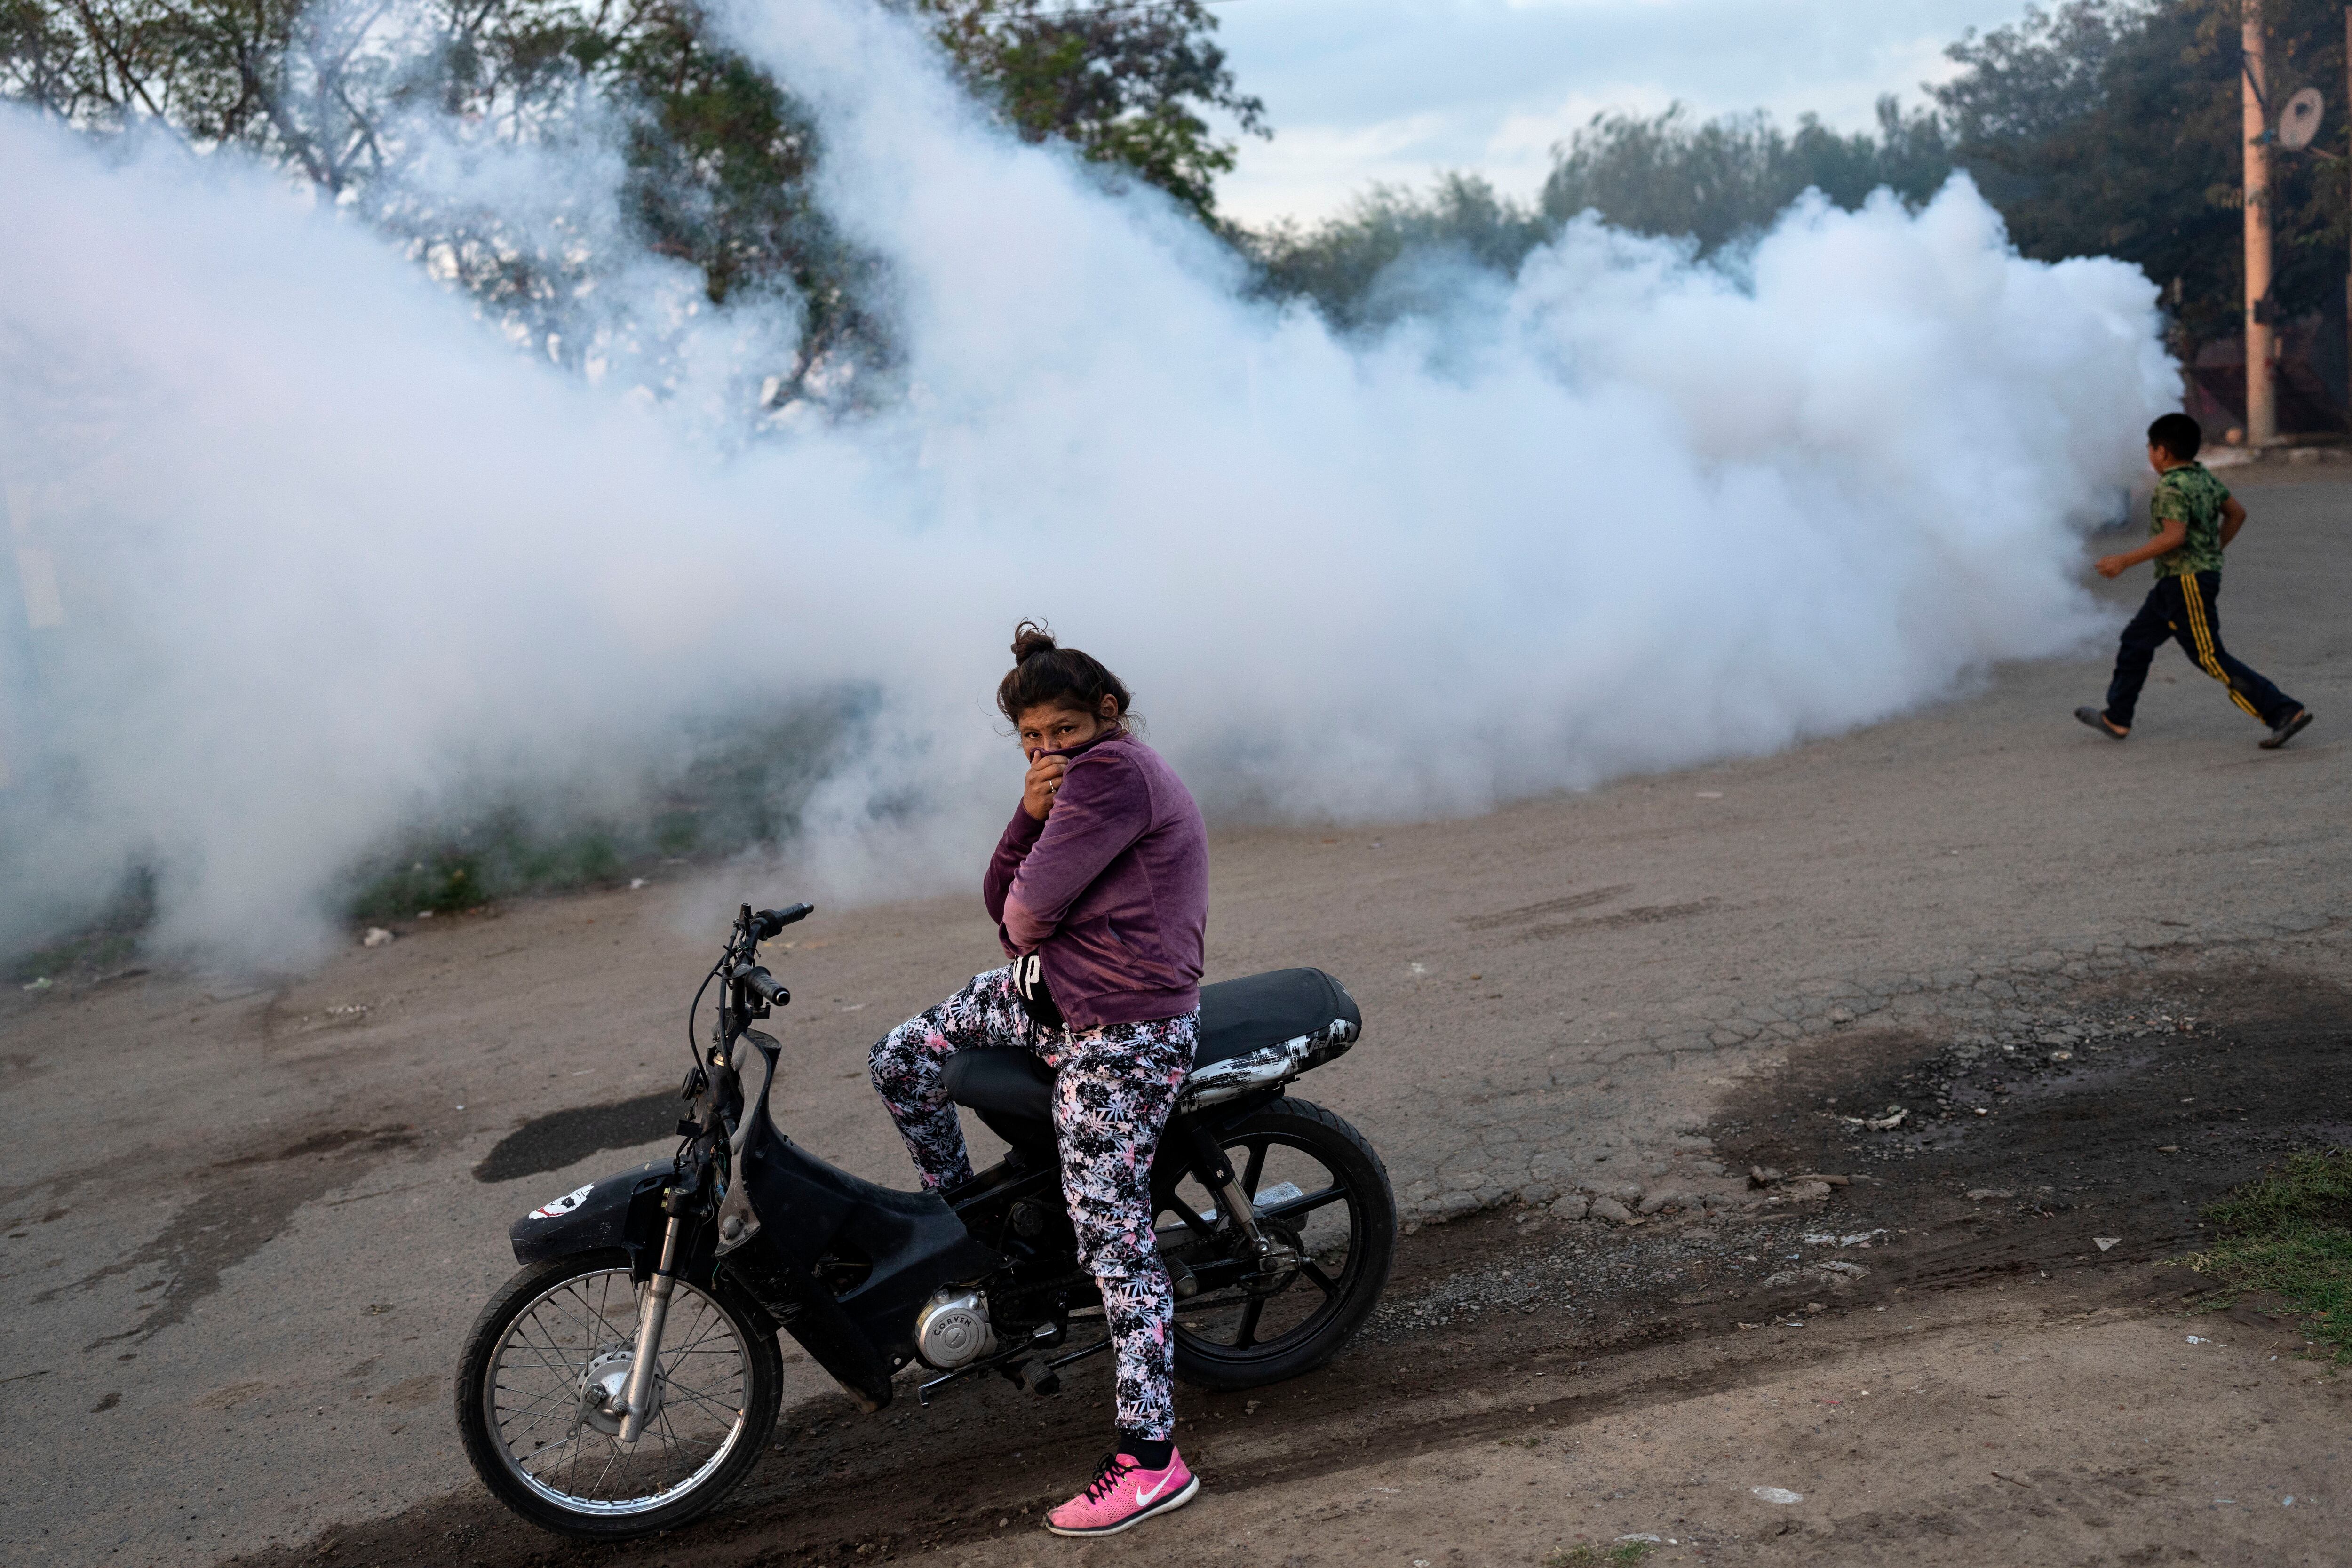 Una mujer se cubre la nariz y boca mientras se lleva a cabo una campaña de fumigación contra el dengue, en Rosario, Argentina, el 4 de abril. 